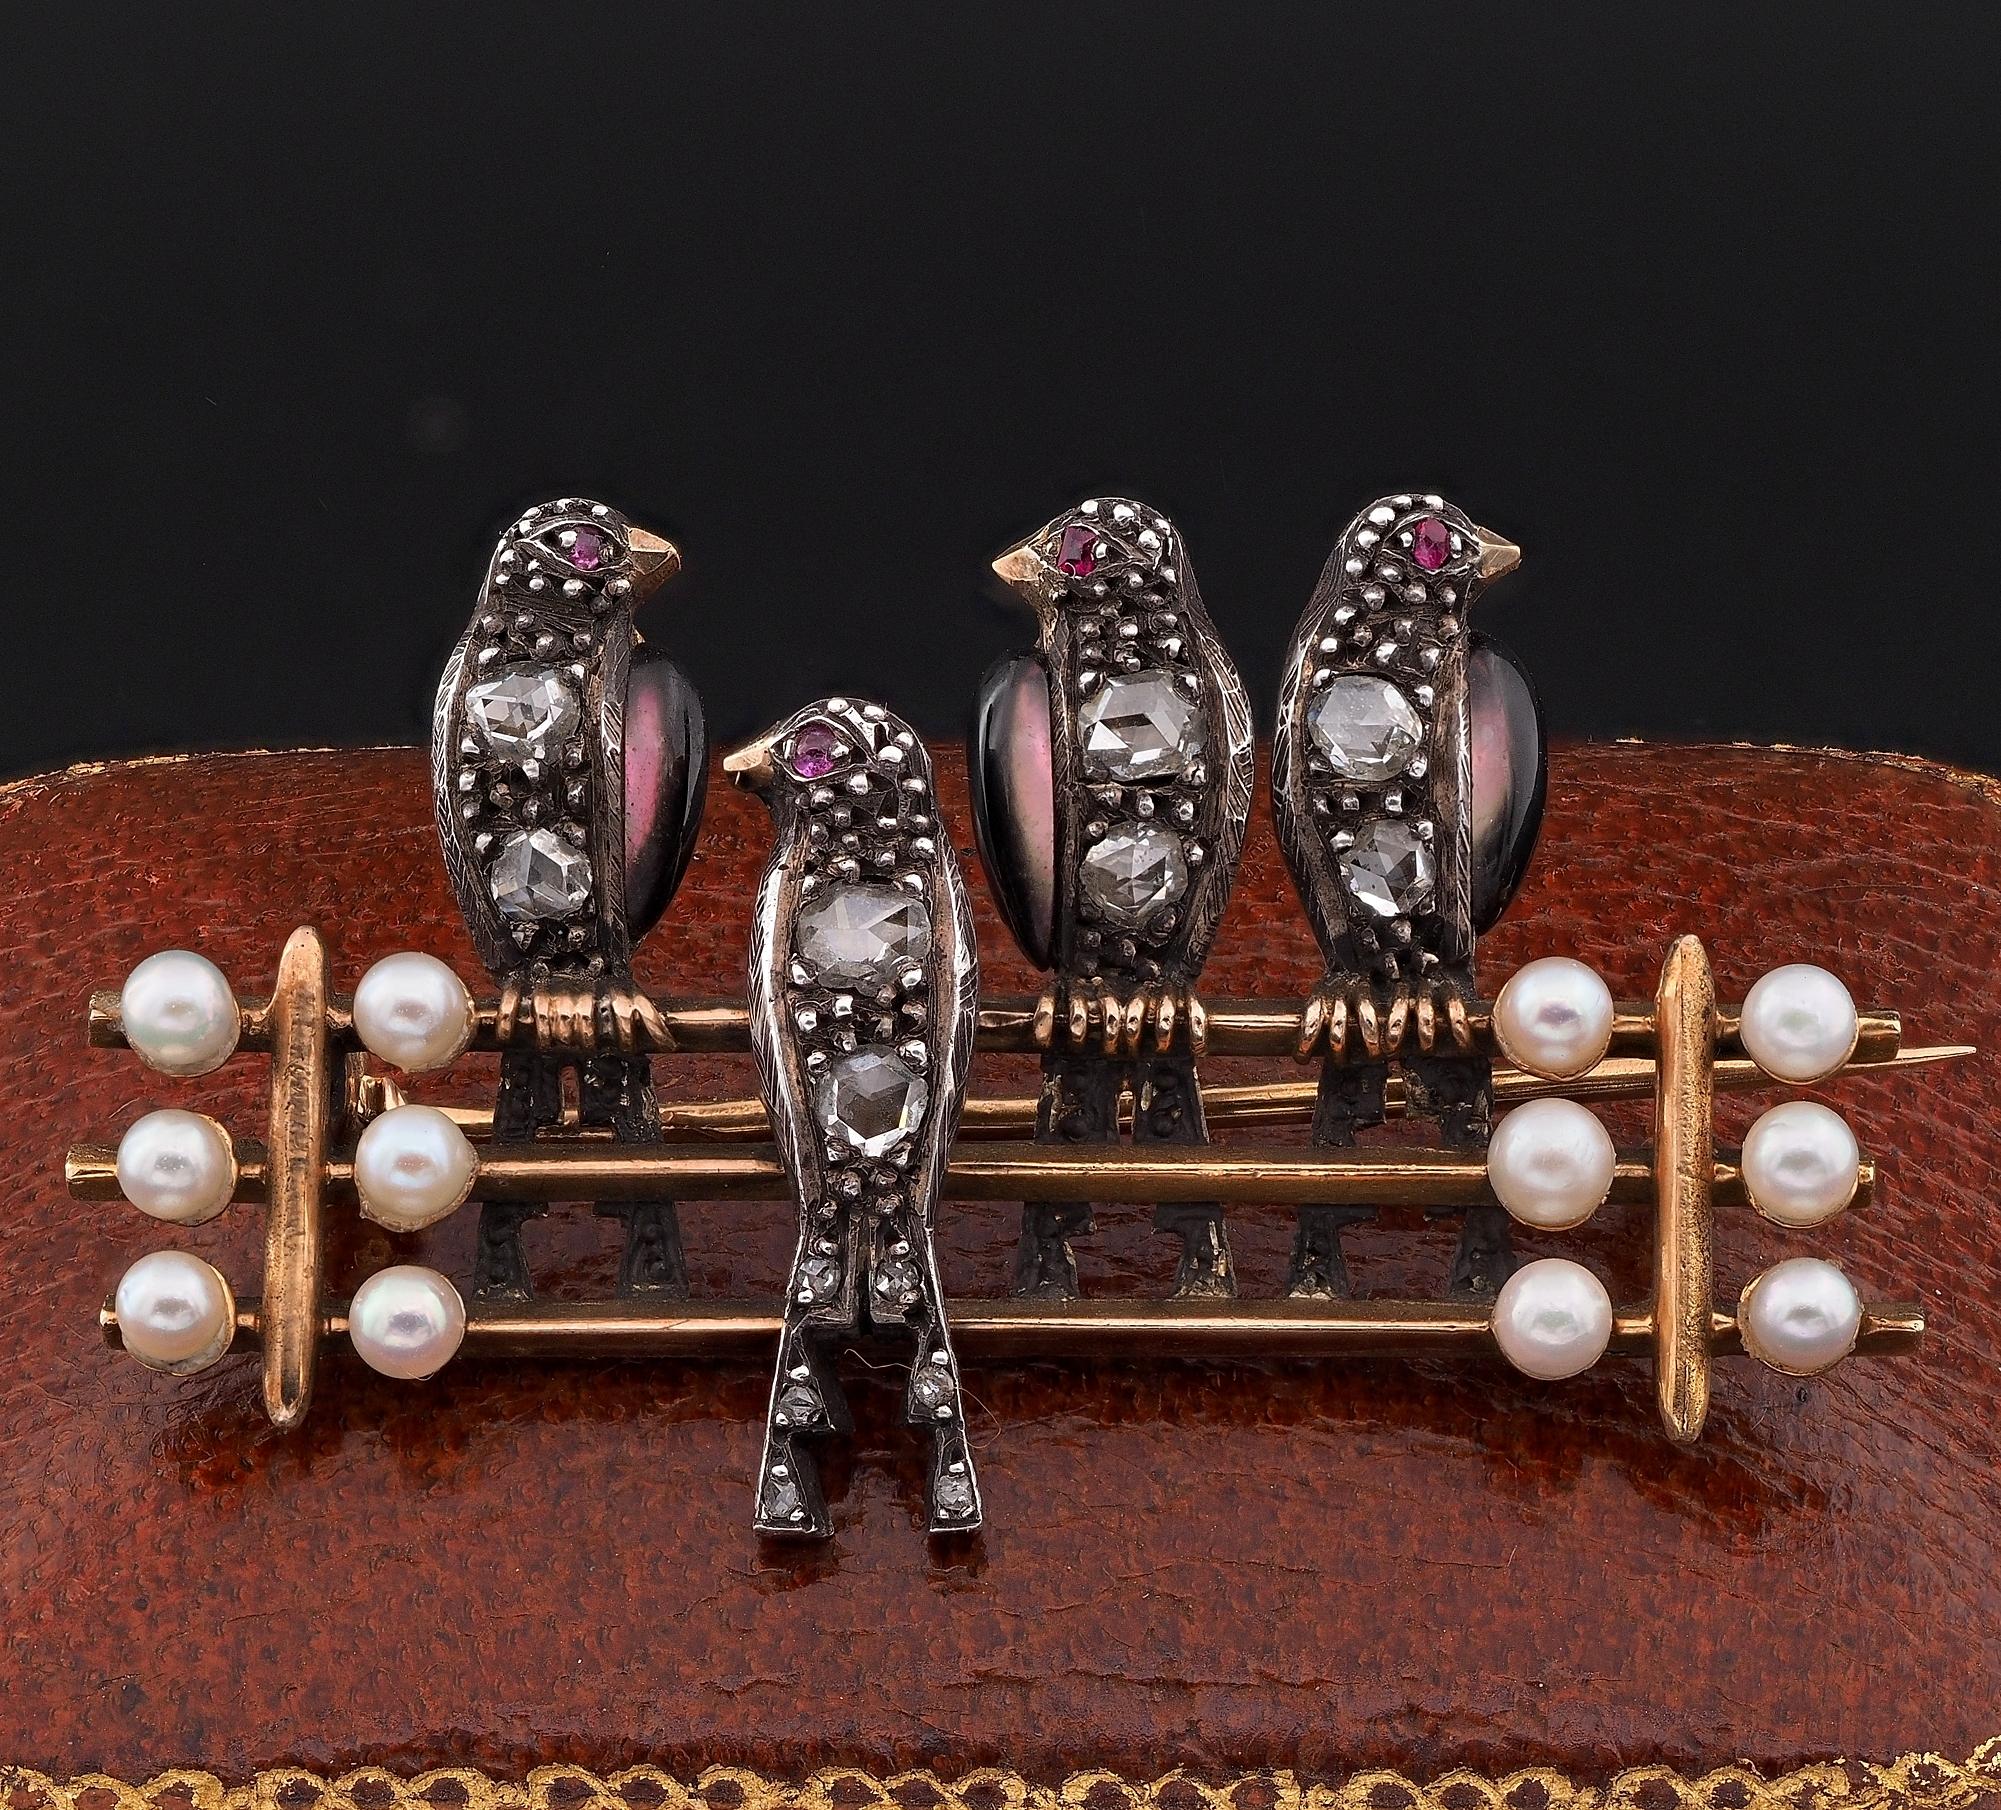 Kostbare Vergangenheit Neuheit
Süße Brosche aus der georgianischen Periode, mit französischen Punzen 1796 ca - handgefertigt aus massivem 18 KT Gold und Silberteilen
Vier Schwalben, die auf Schienen liegen, wunderschön mit natürlichen Perlen an den